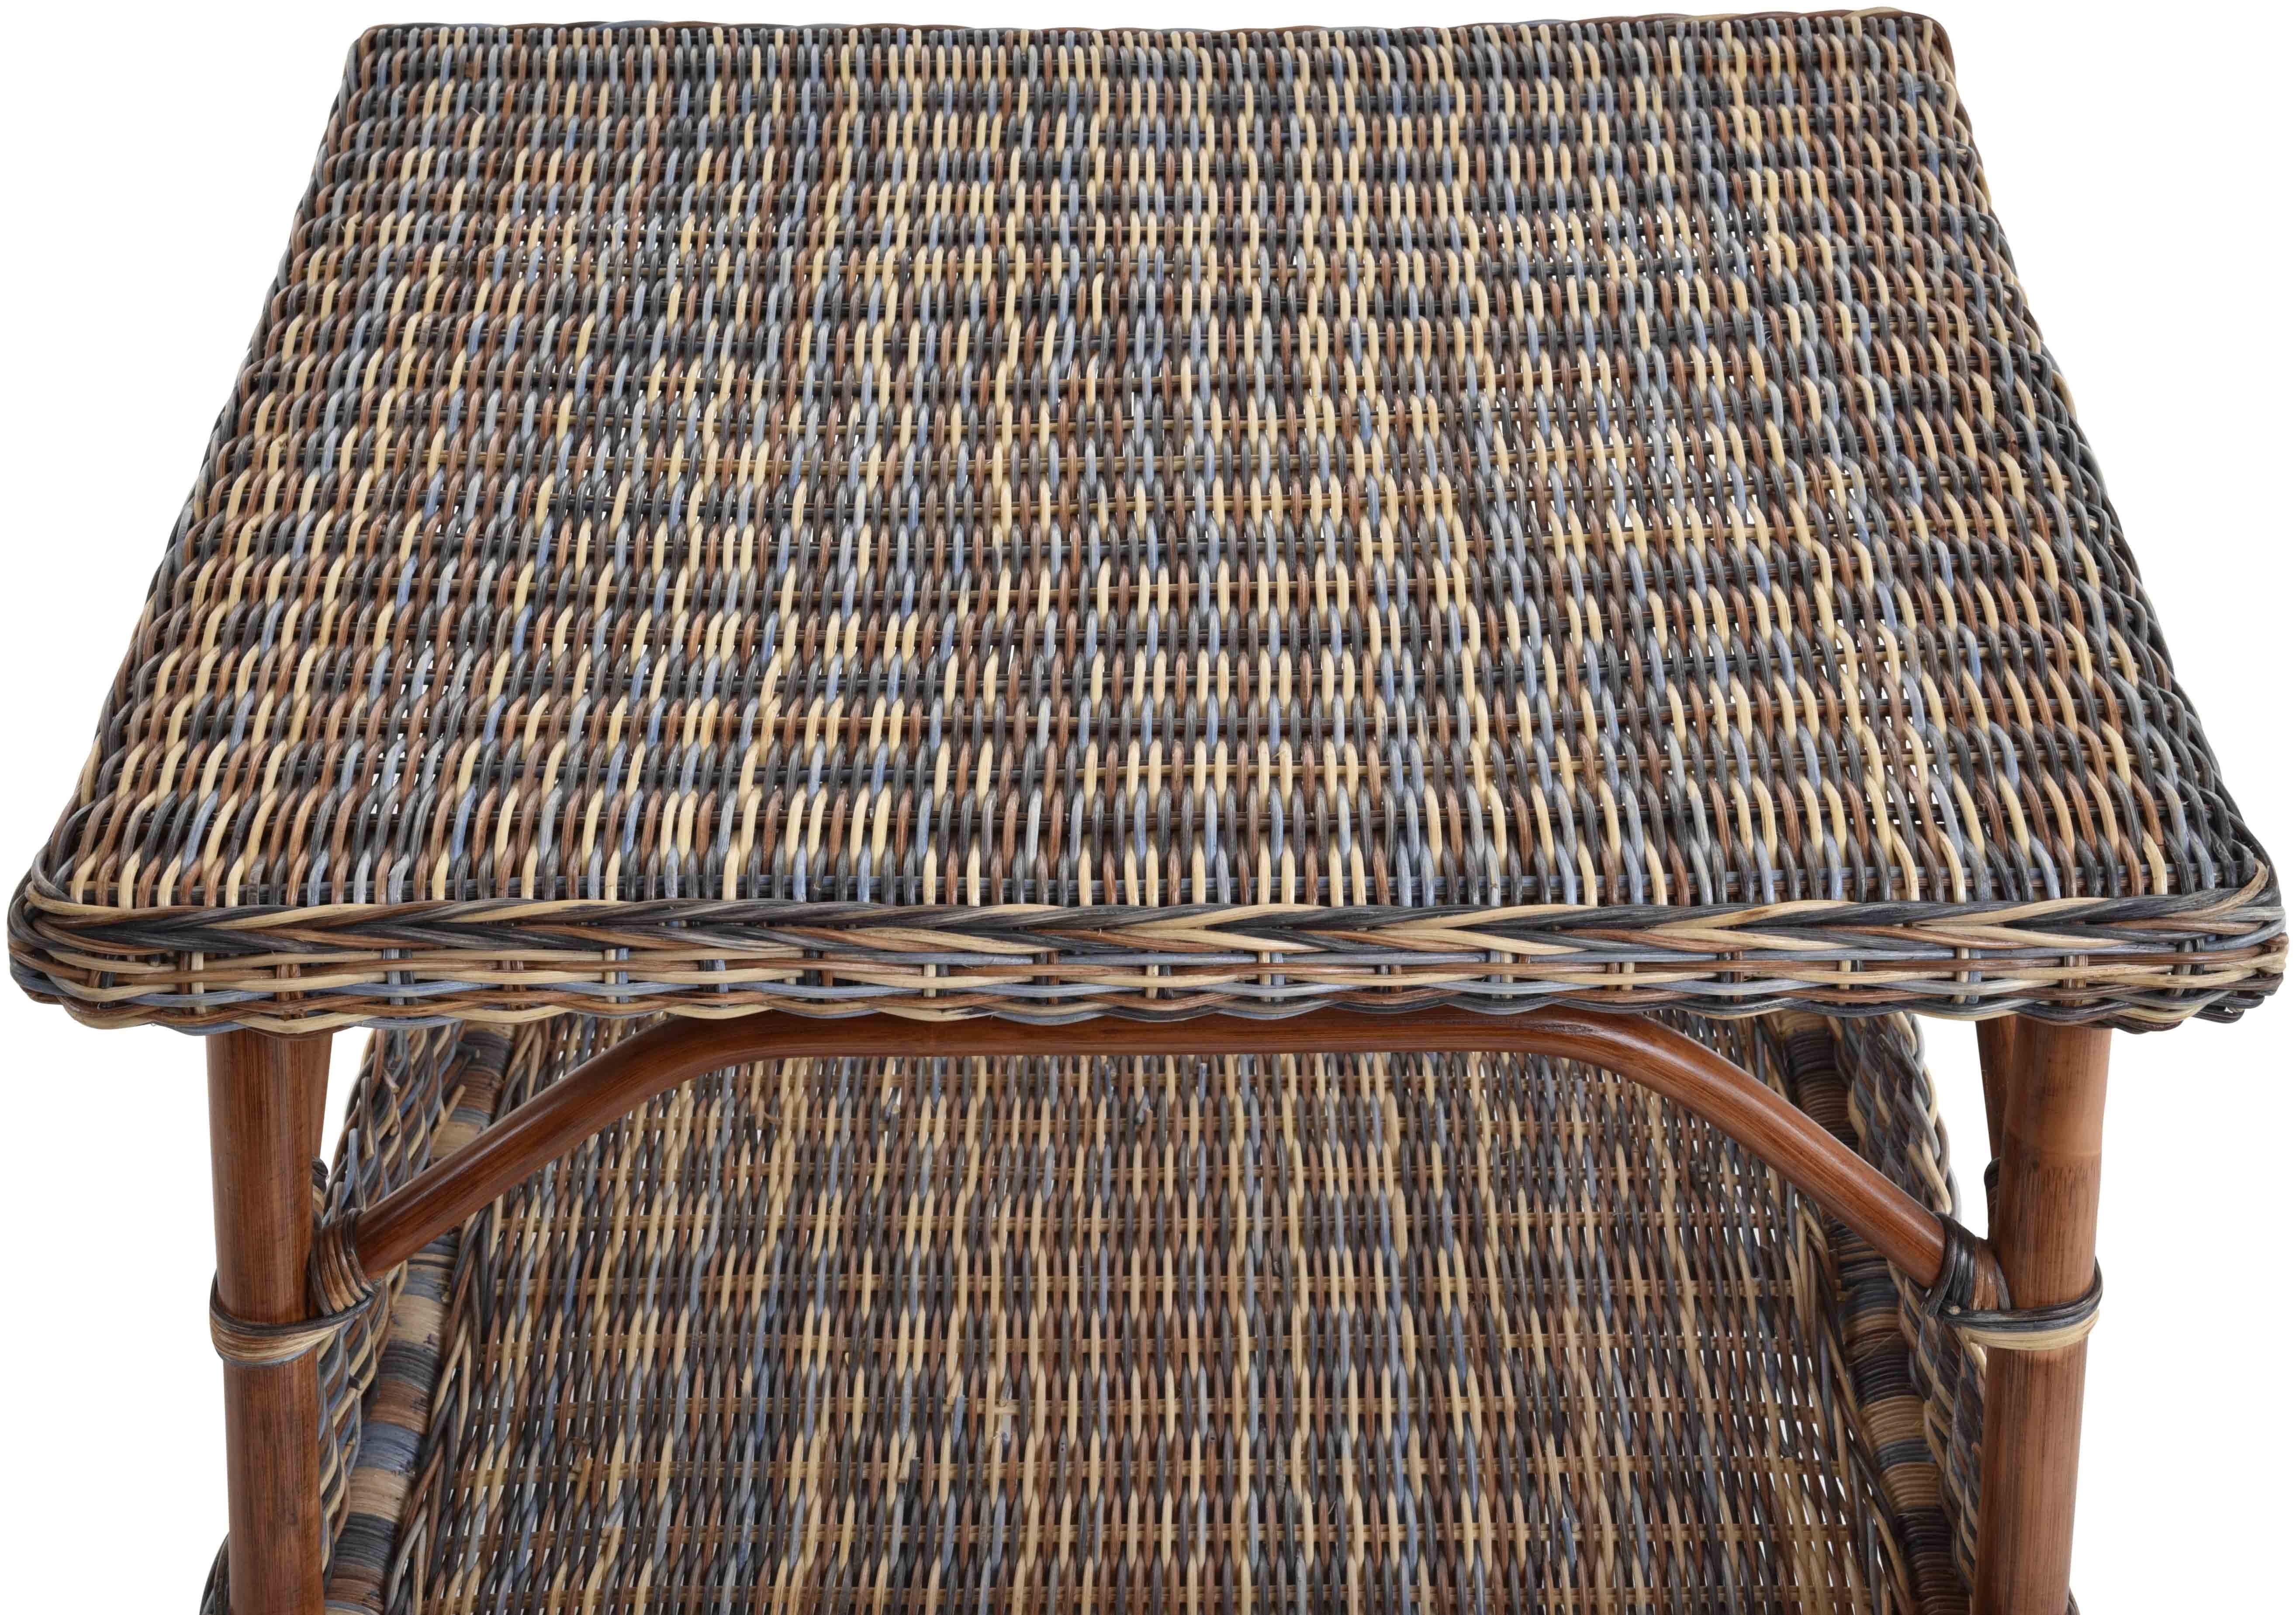 Quadratisch Ablage Ablage Mehrfarbig Tisch Couchtisch Rattan-Tisch Krines Home 60x60, Beistelltisch zusätzliche Beistelltisch Rattan, Wohnzimmer